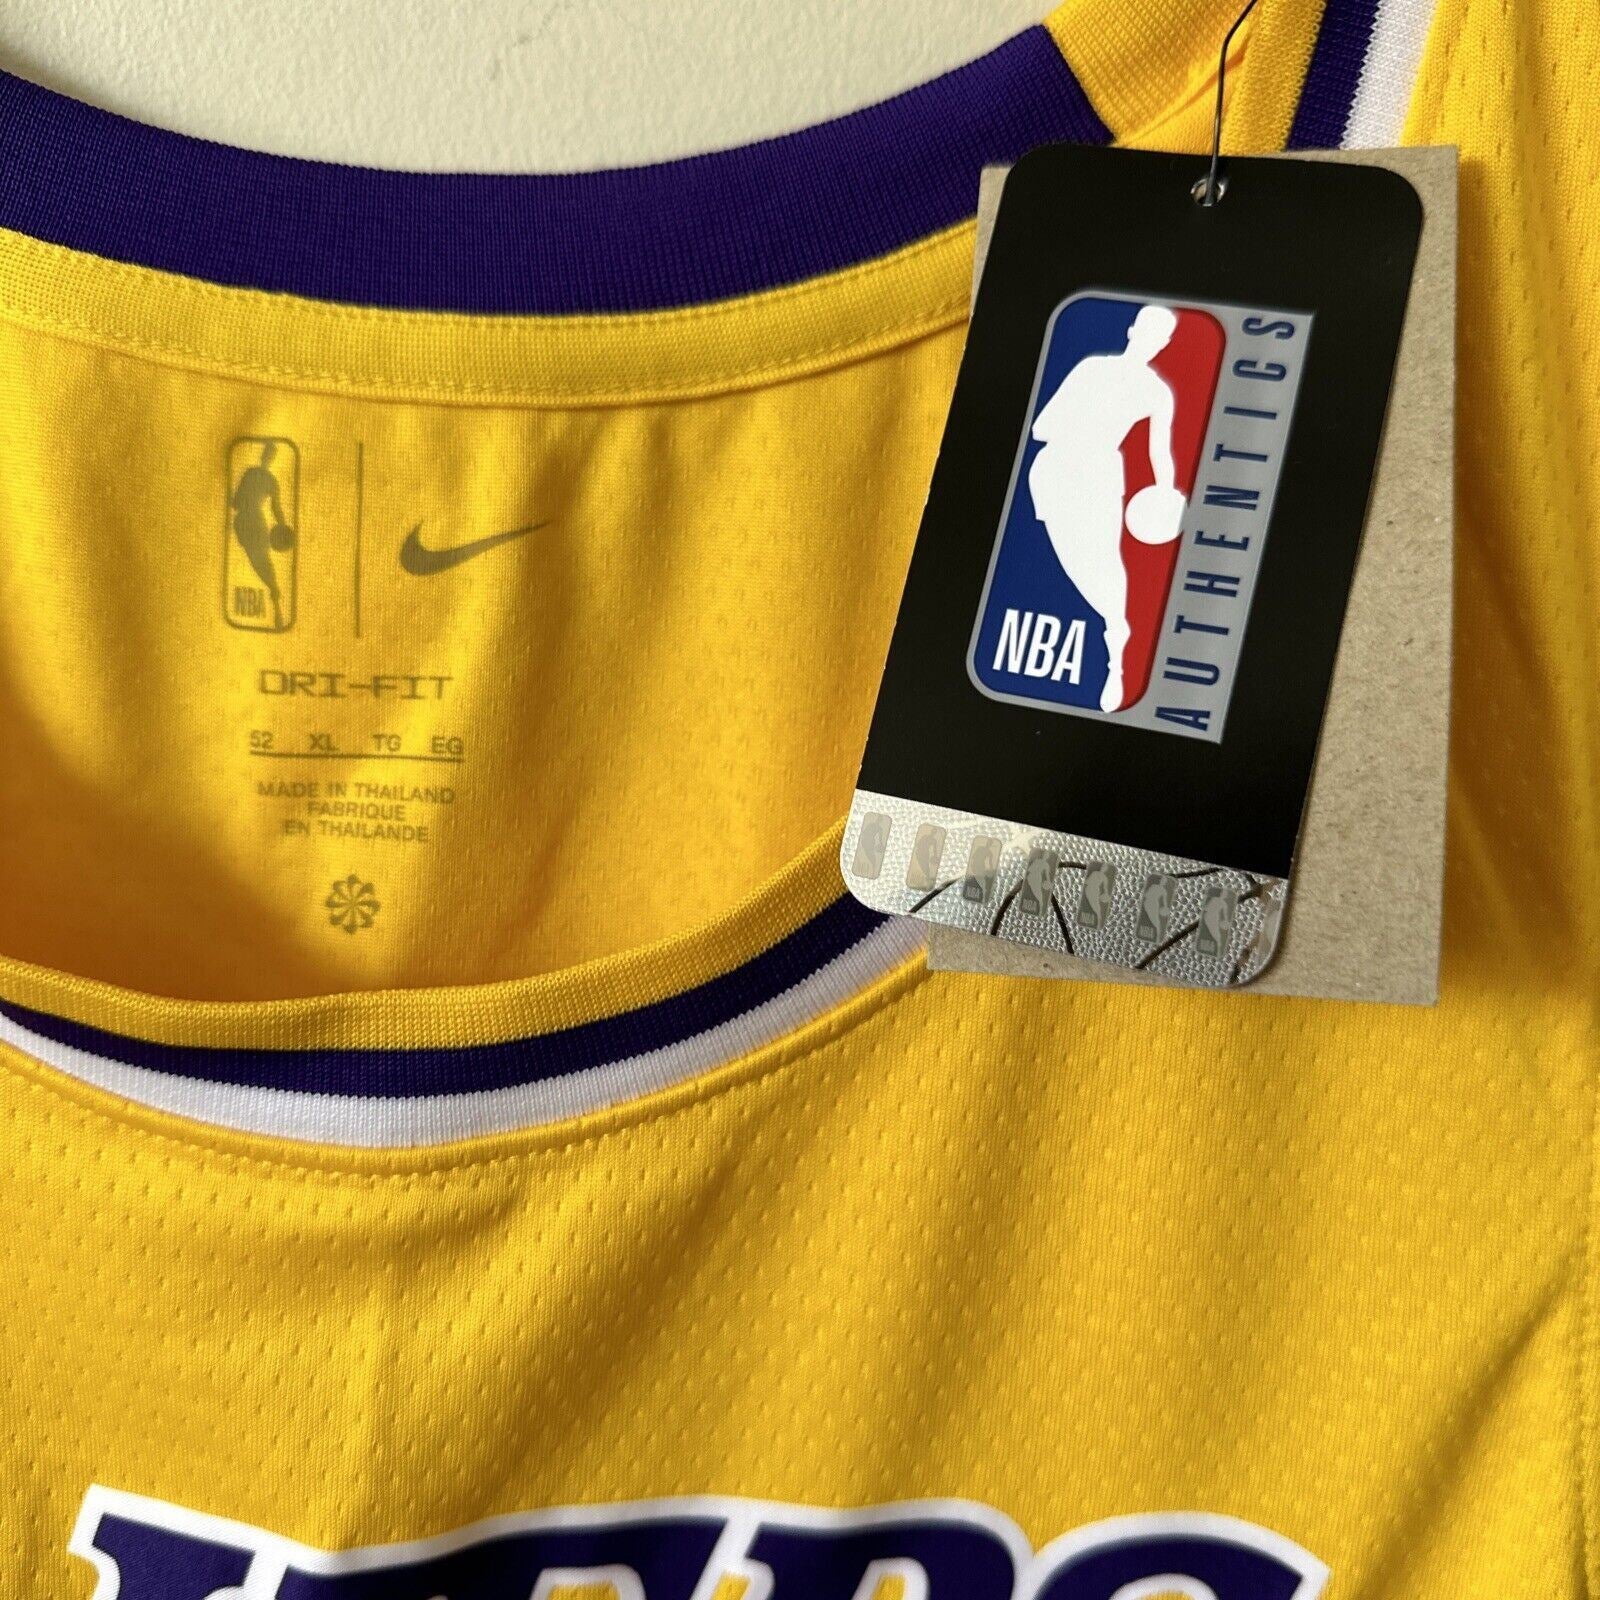 Nike NBA LA Lakers Icon Edition Jersey CHRIS 41 Men’s XL